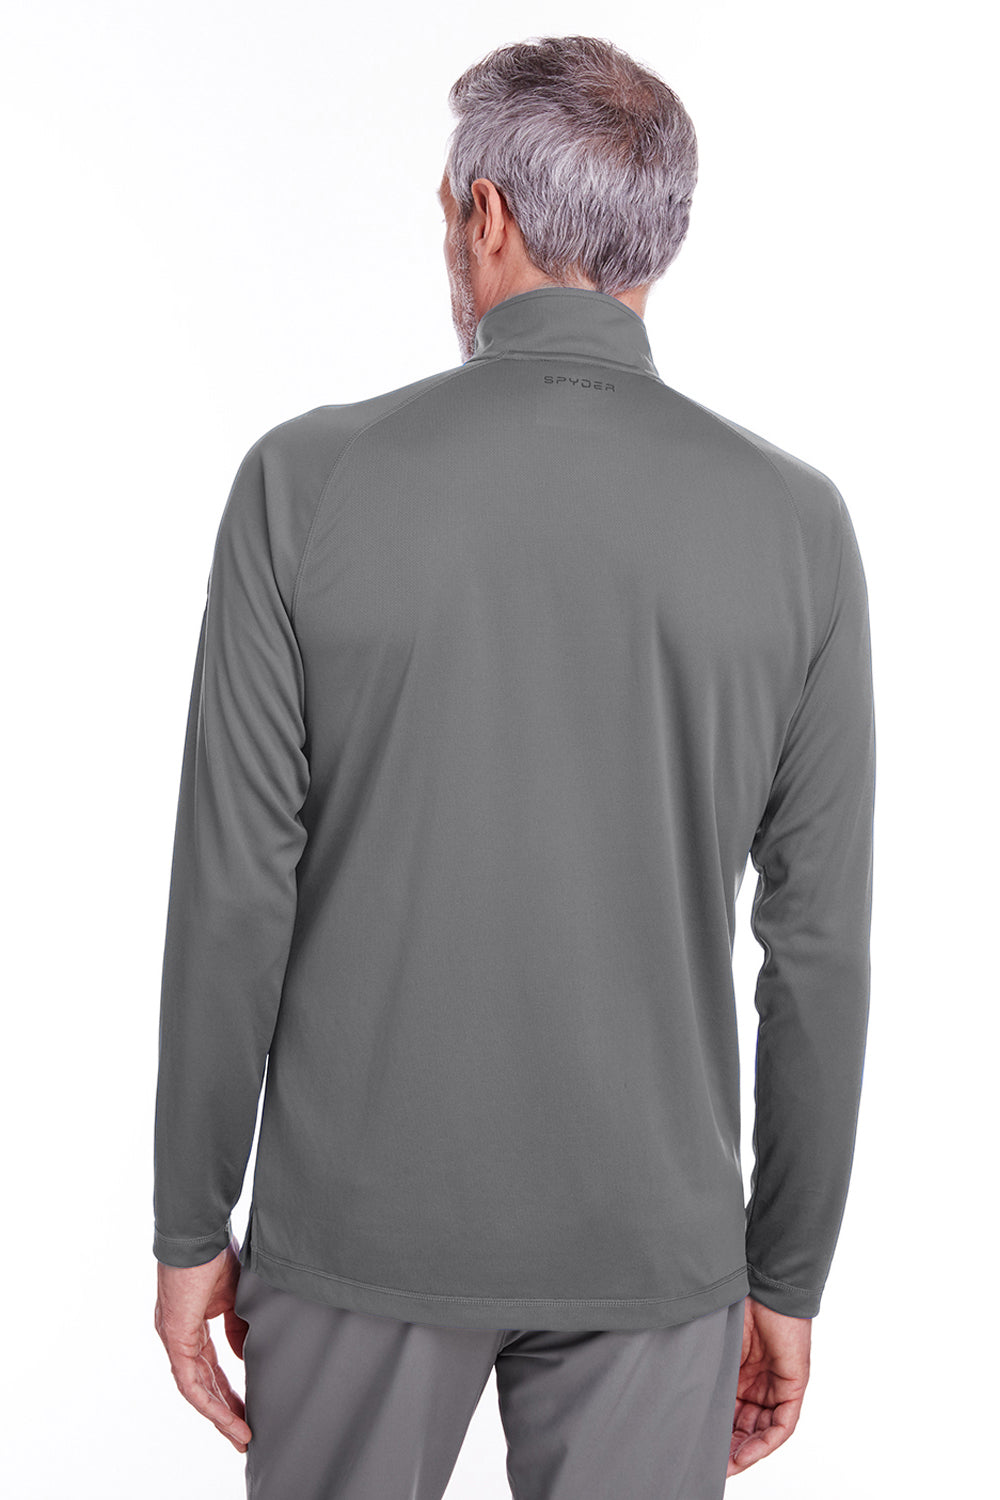 Spyder S16797 Mens Freestyle 1/4 Zip Sweatshirt Grey Back